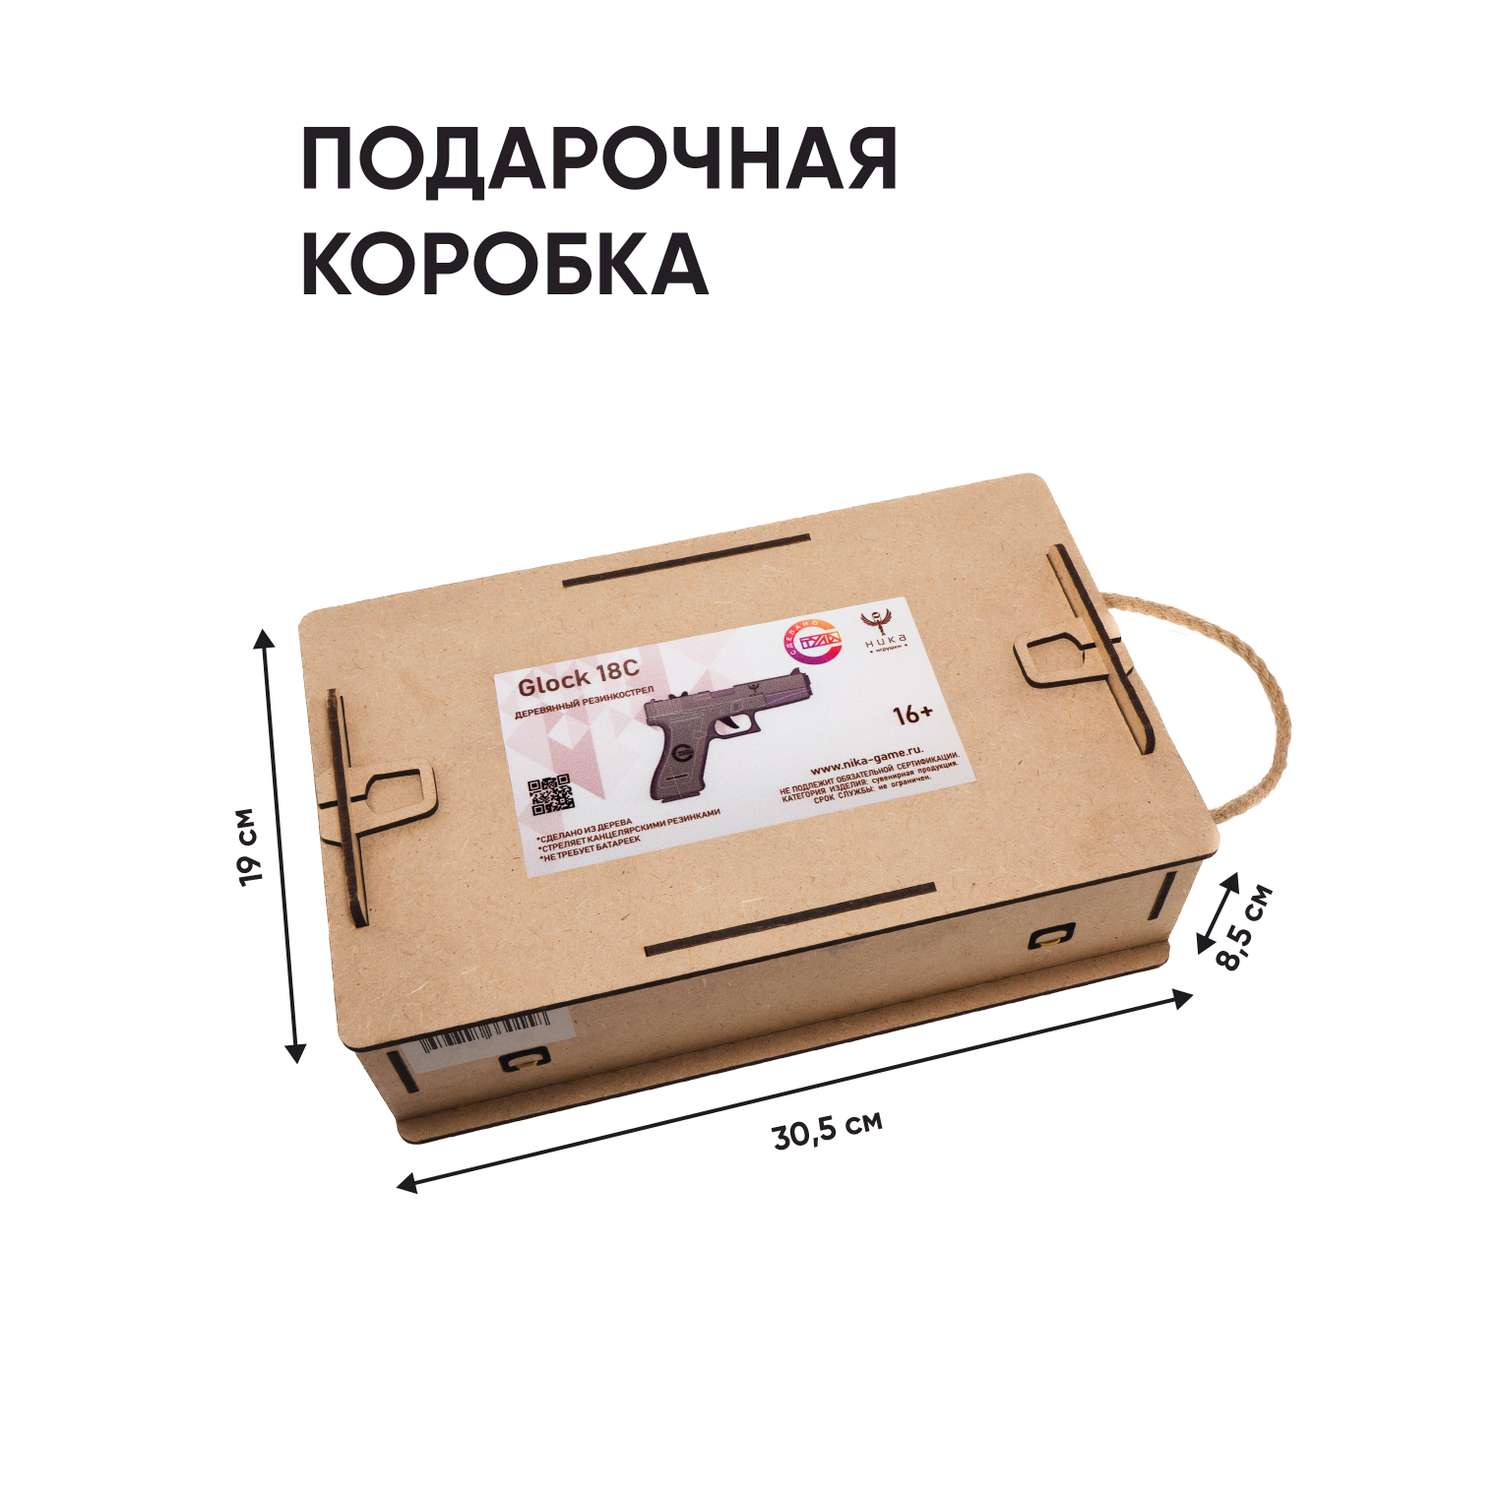 Резинкострел НИКА игрушки Пистолет Glock 18C (G) в подарочной упаковке - фото 5